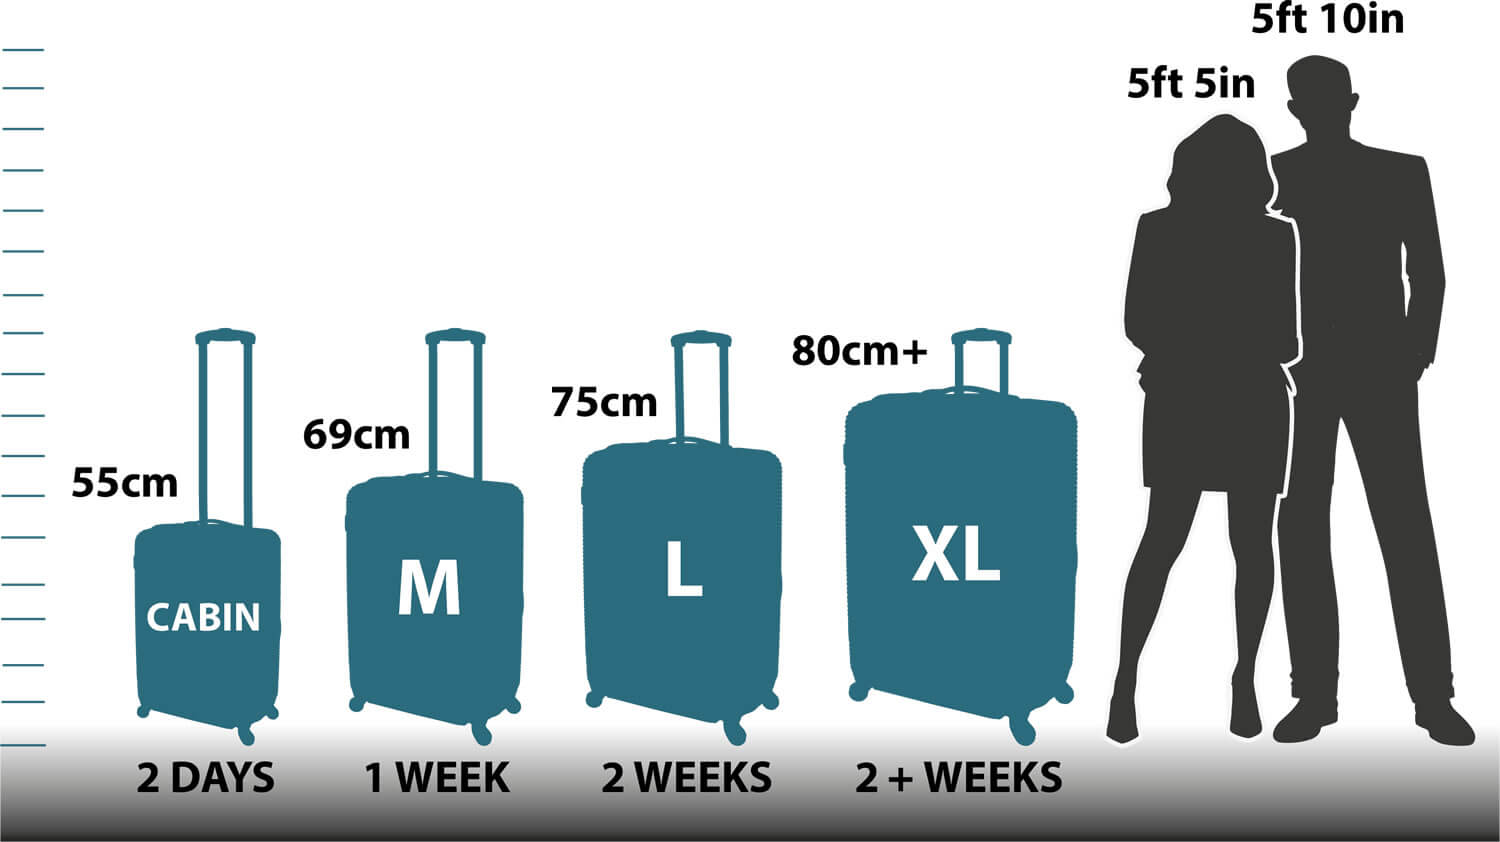 base travel size